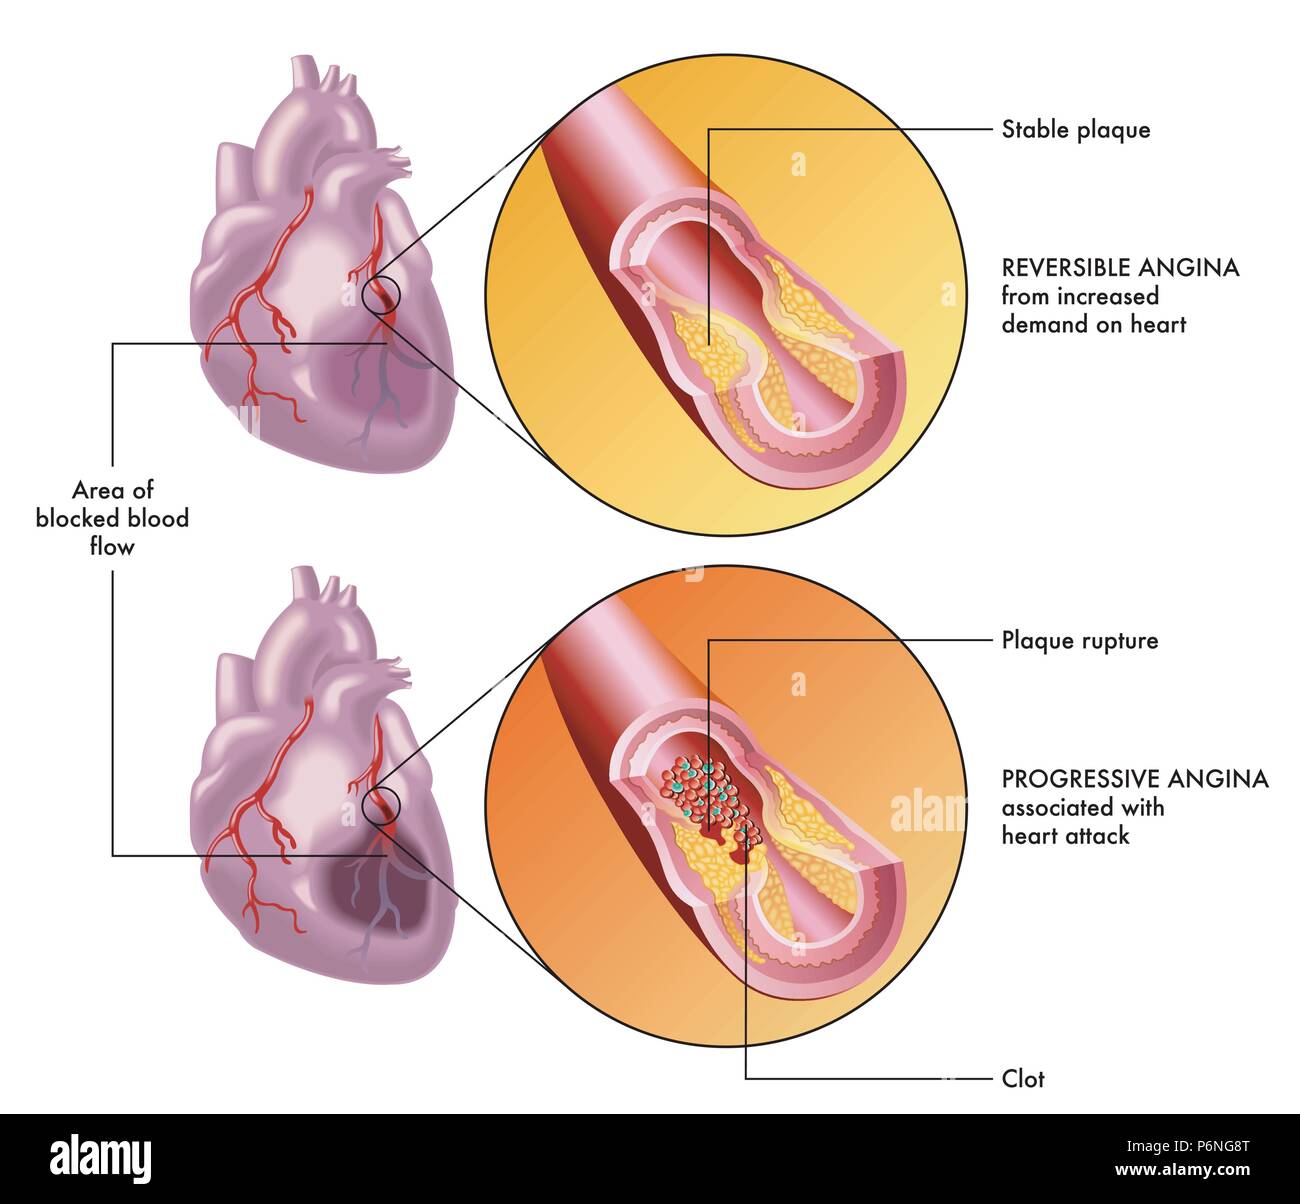 Un vecteur illustration médicale du cœur humain et les effets d'un réversible et une angine. Illustration de Vecteur